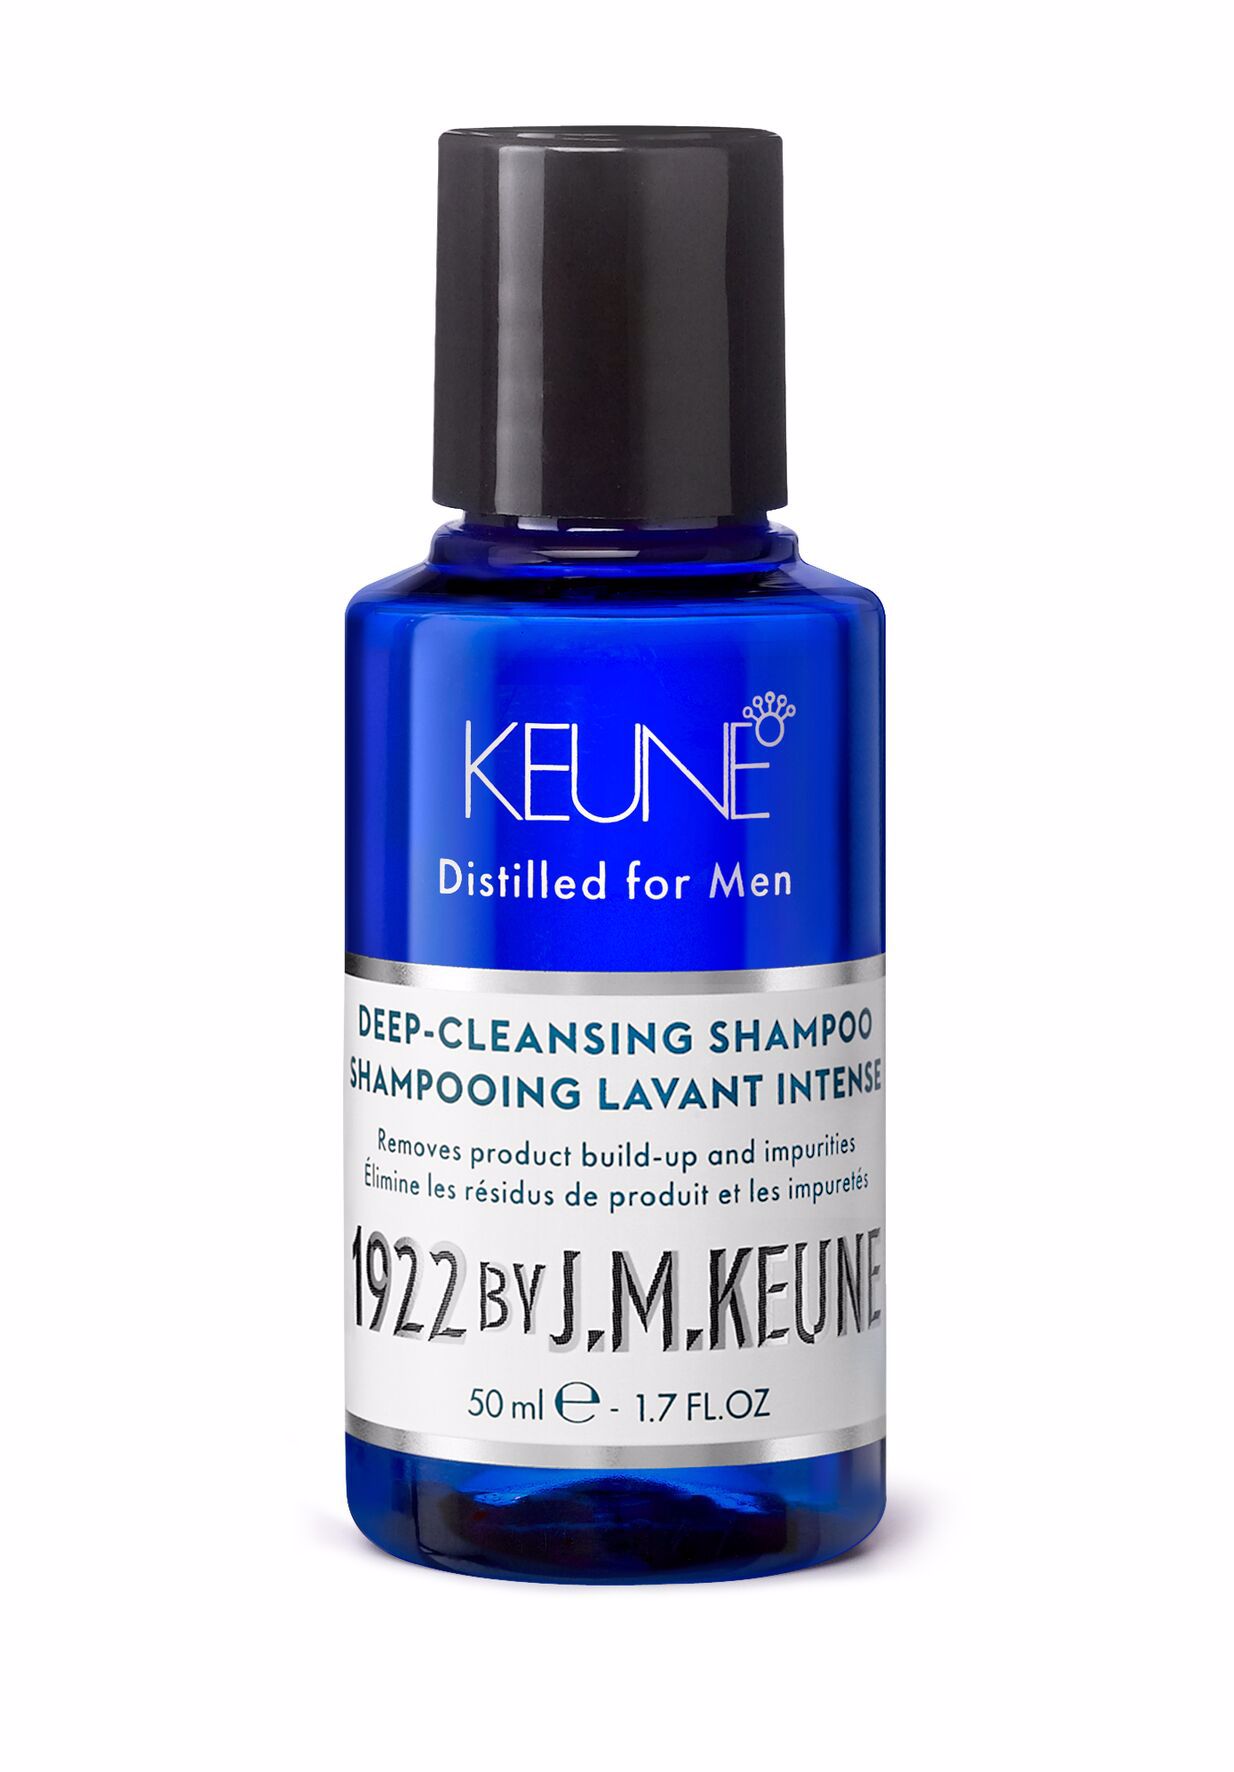 Notre Deep-Cleansing Shampoo pour hommes nettoie en profondeur et hydrate. La créatine et l'extrait de bambou renforcent les cheveux gras. Sur keune.ch.